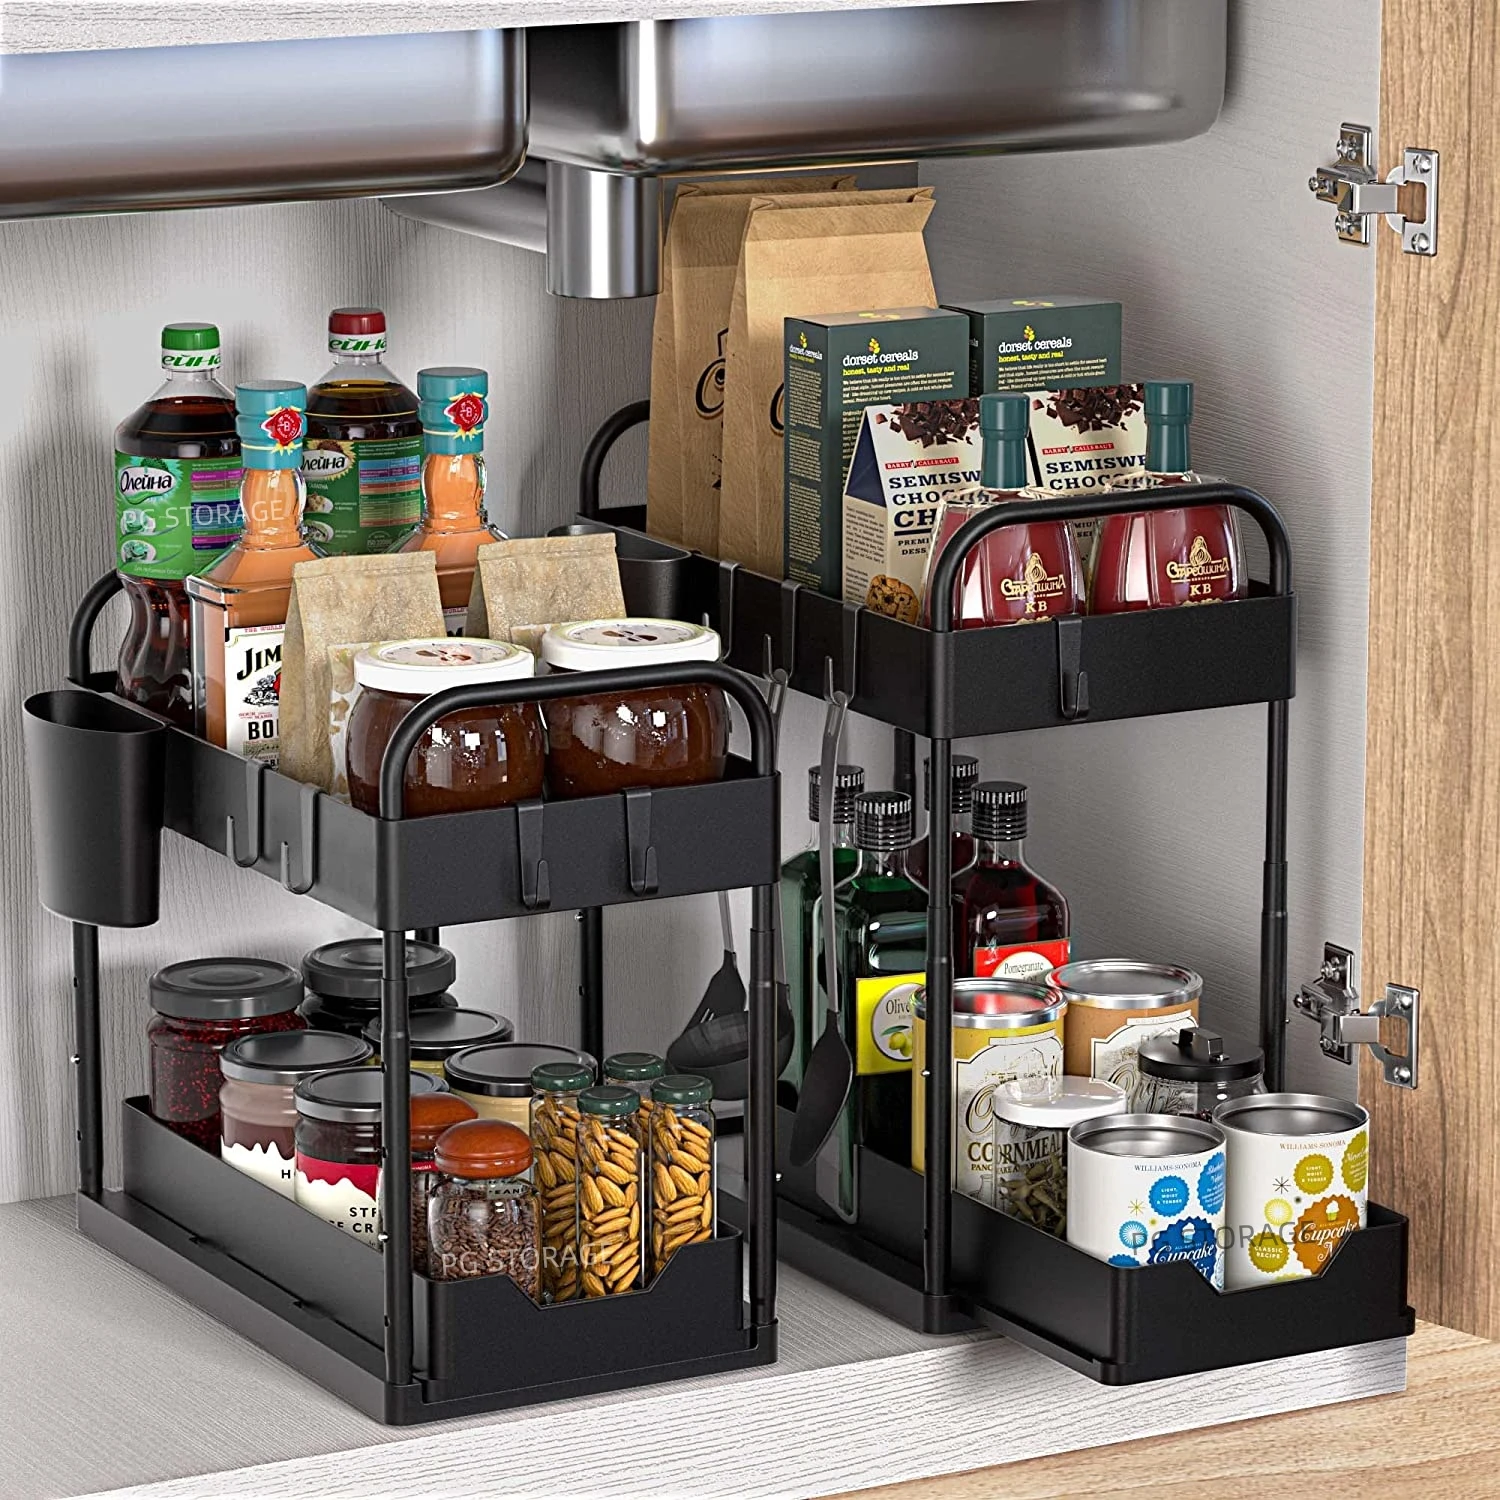 https://ae01.alicdn.com/kf/Se4a358ef55ef4389b2d6e7a36639ab02m/Kitchen-Under-Sink-Organizer-Adjustable-Height-2-Tier-Under-Cabinet-Storage-Bathroom-Organizer-Sliding-Drawer-With.jpg